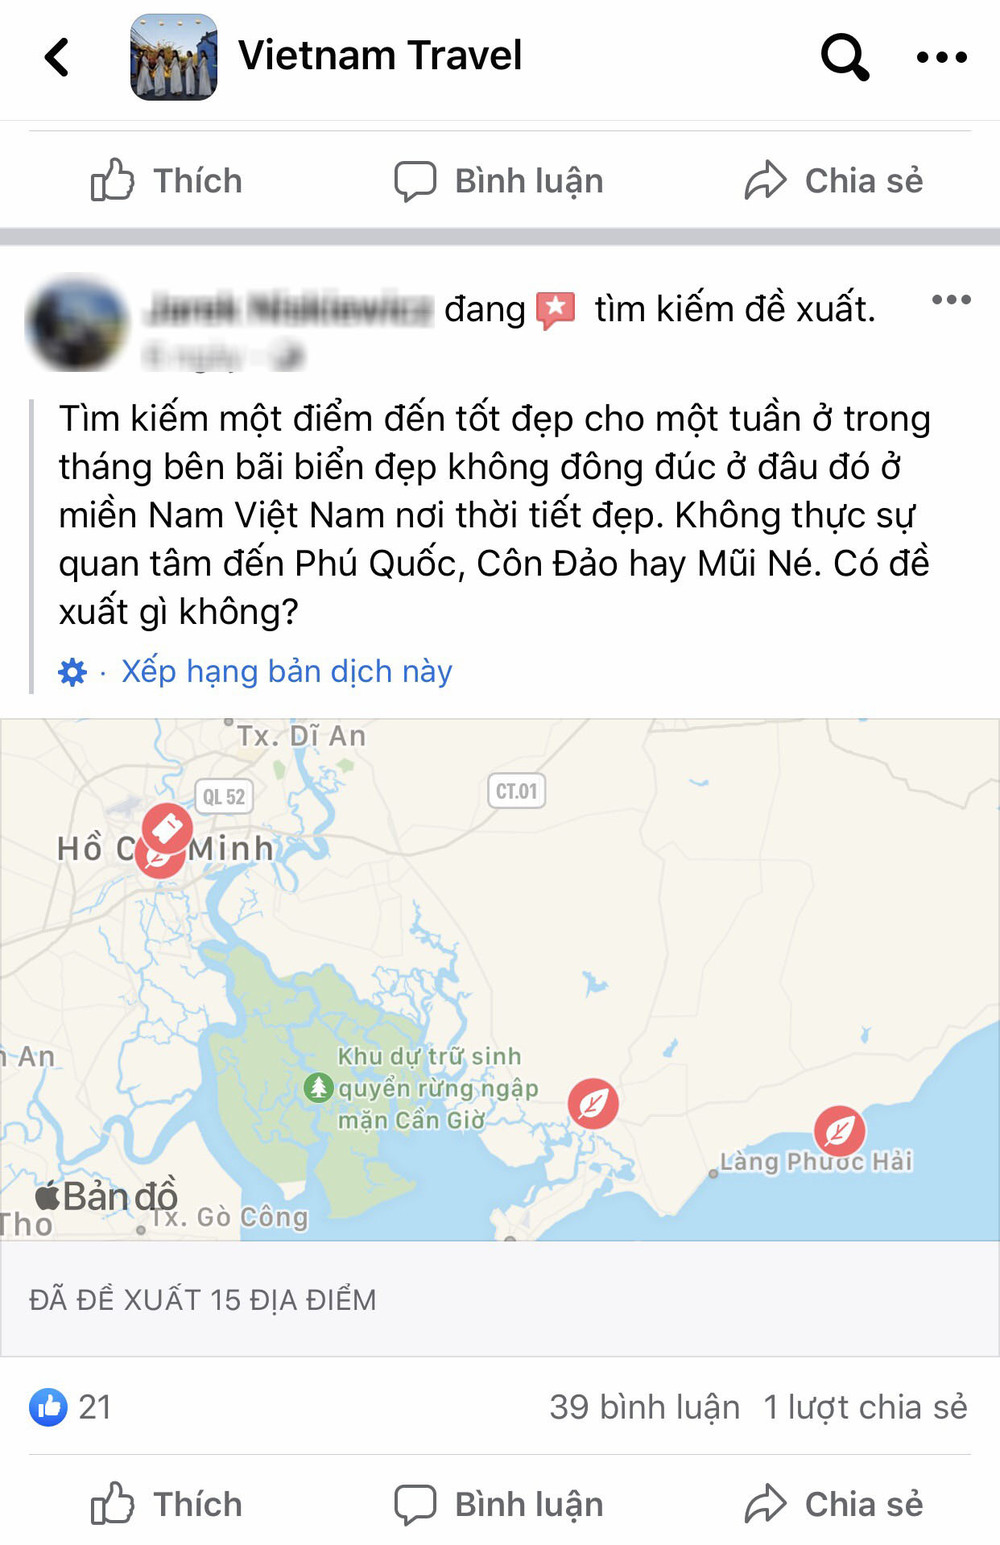 Các bài viết trong Vietnam Travel chủ yếu chia sẻ những địa điểm đẹp của người Việt Nam đến với người nước ngoài. (Ảnh: Chụp màn hình)